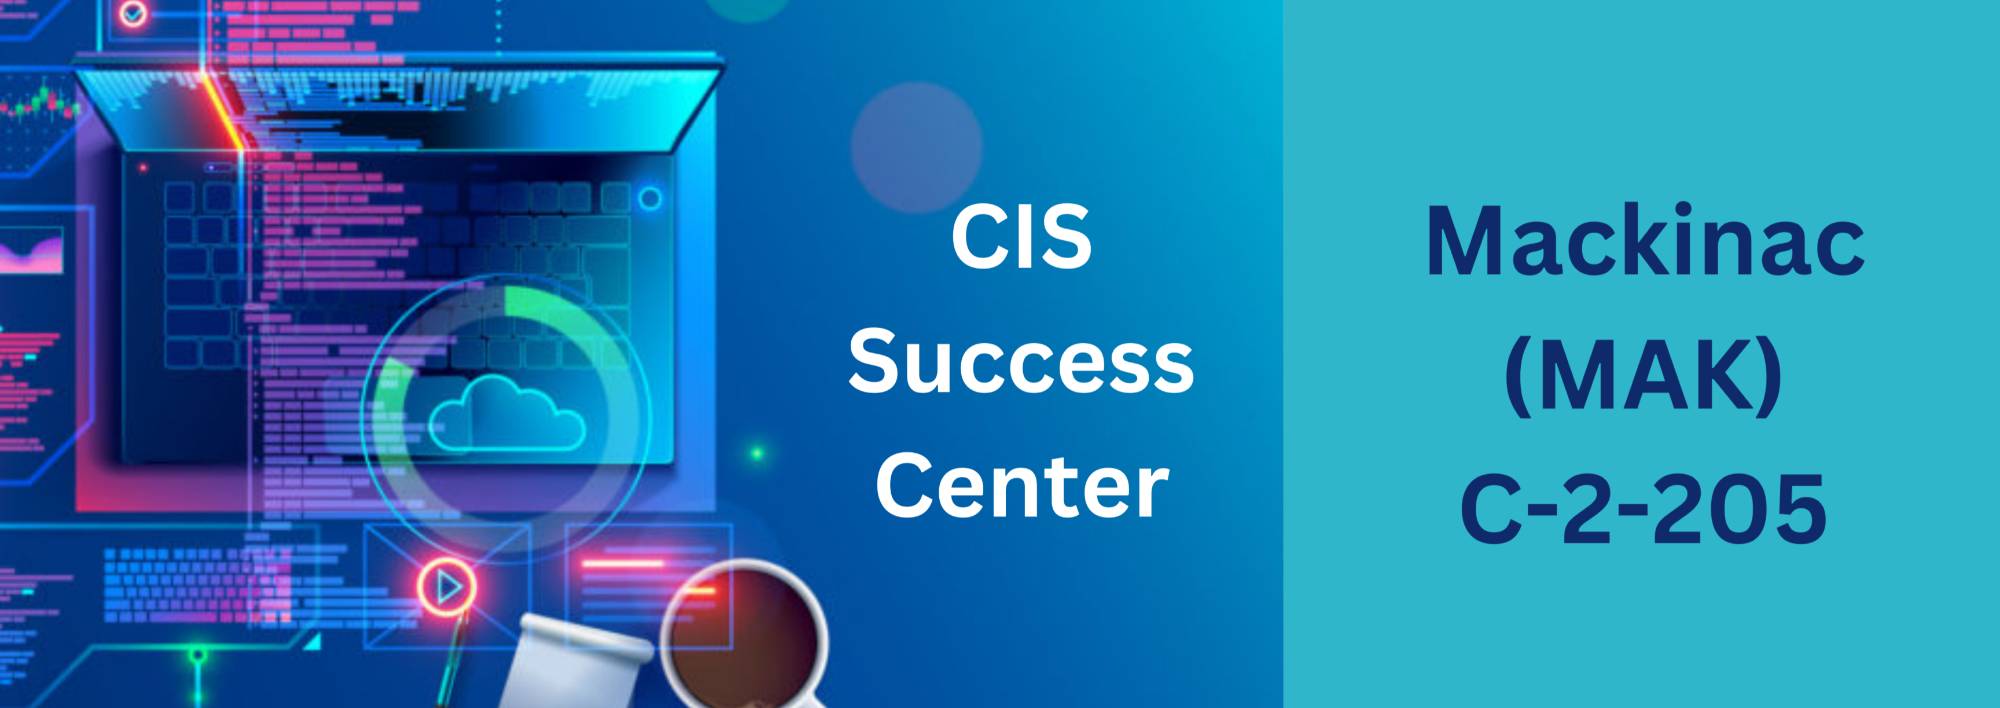 CIS Success Center: Mackinac (MAK) C-2-205